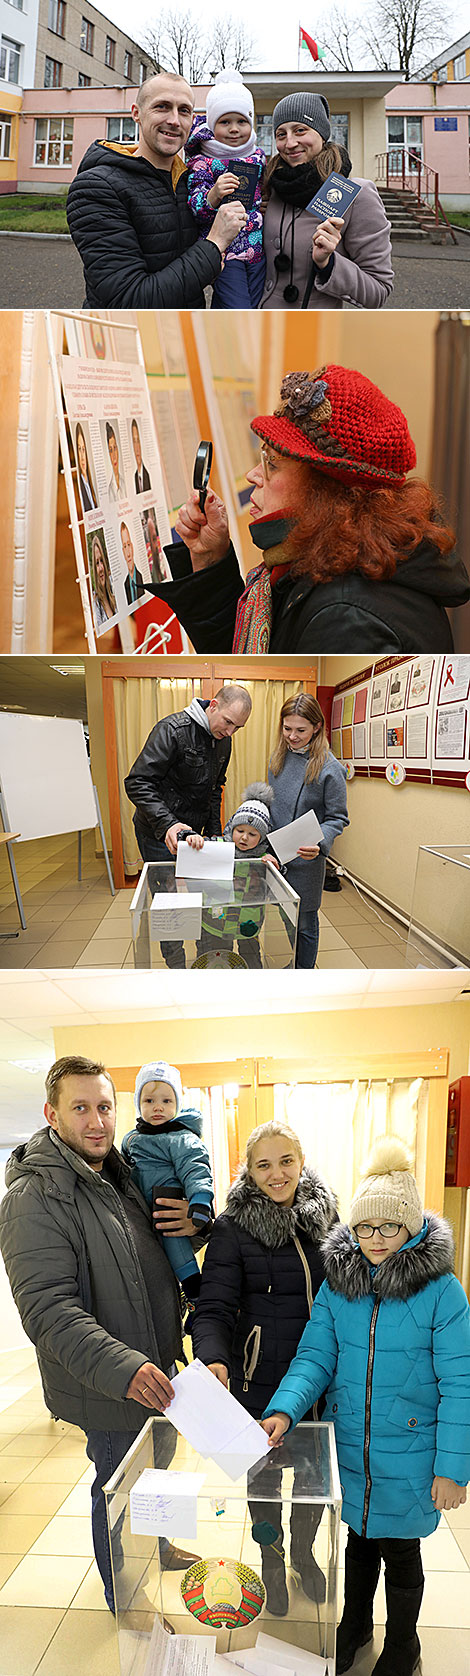 Явка избирателей в Витебской области на 12.00 превысила 50%